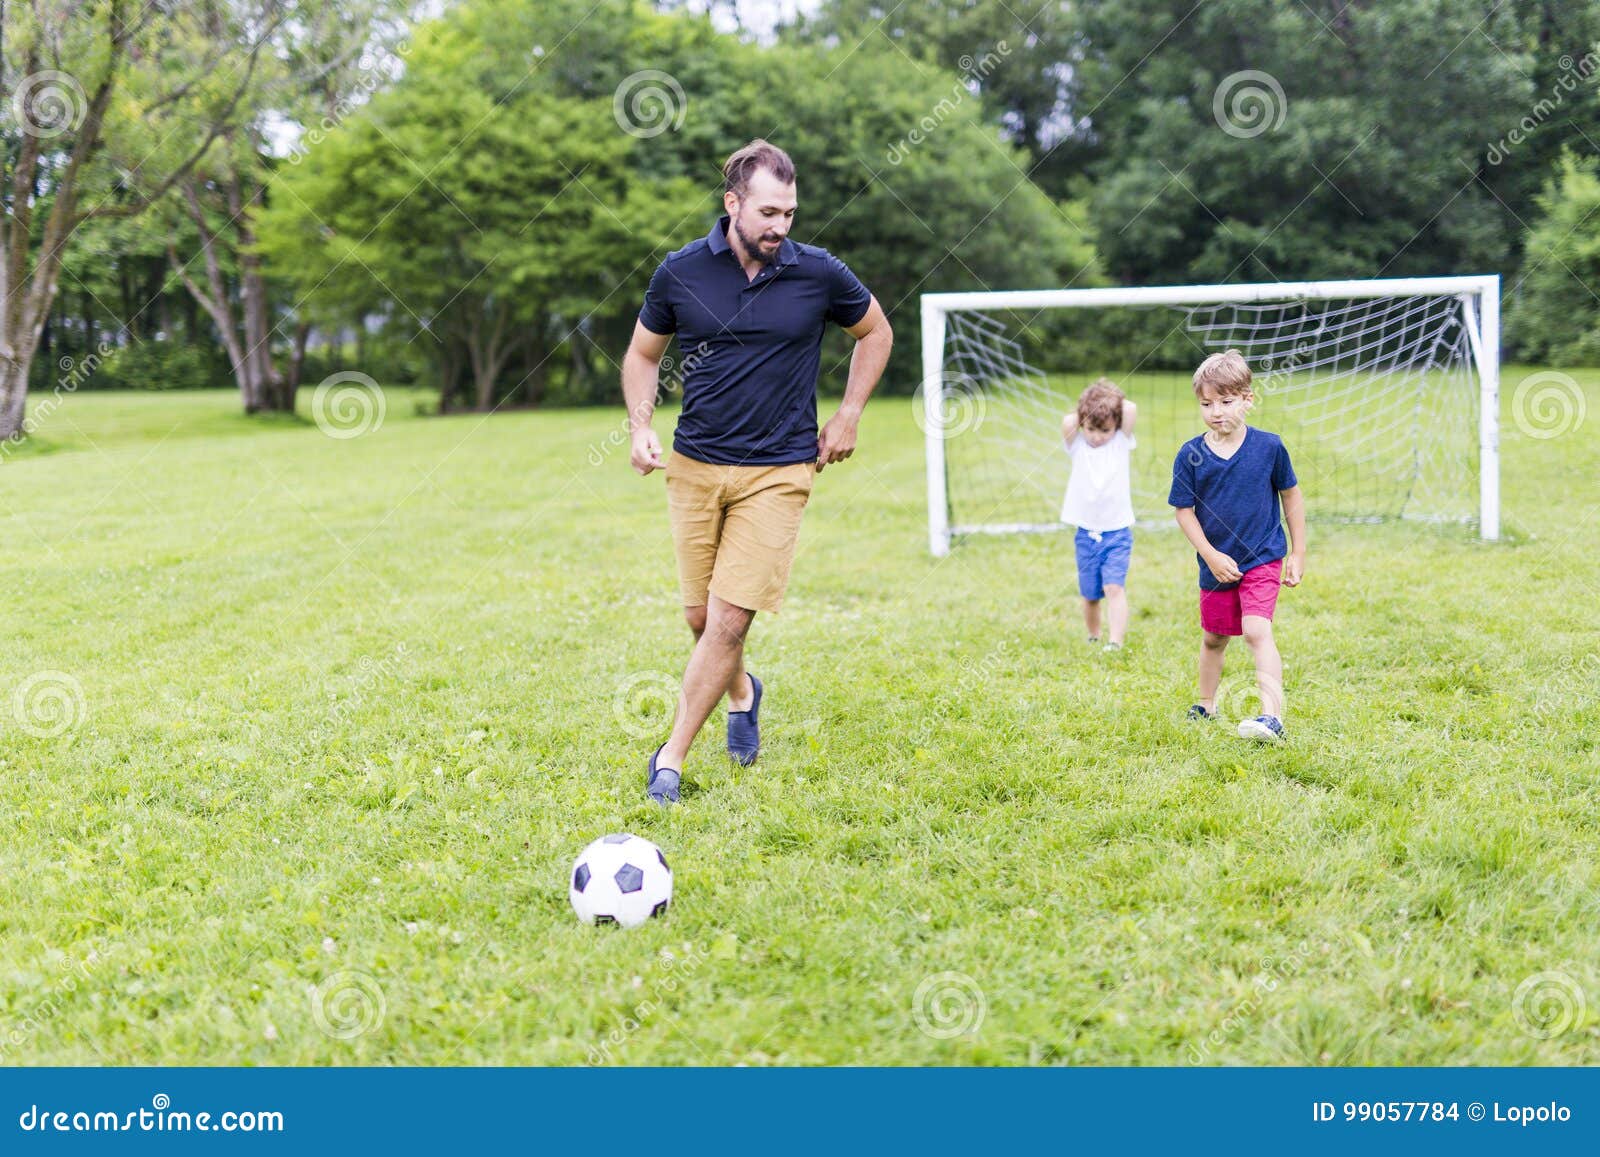 Папы играют в футбол. Папа и сын футбол. Отец и сын играют в футбол. Фотосессия на футбольном поле с сыном. Папа с сыном играют в футбол.